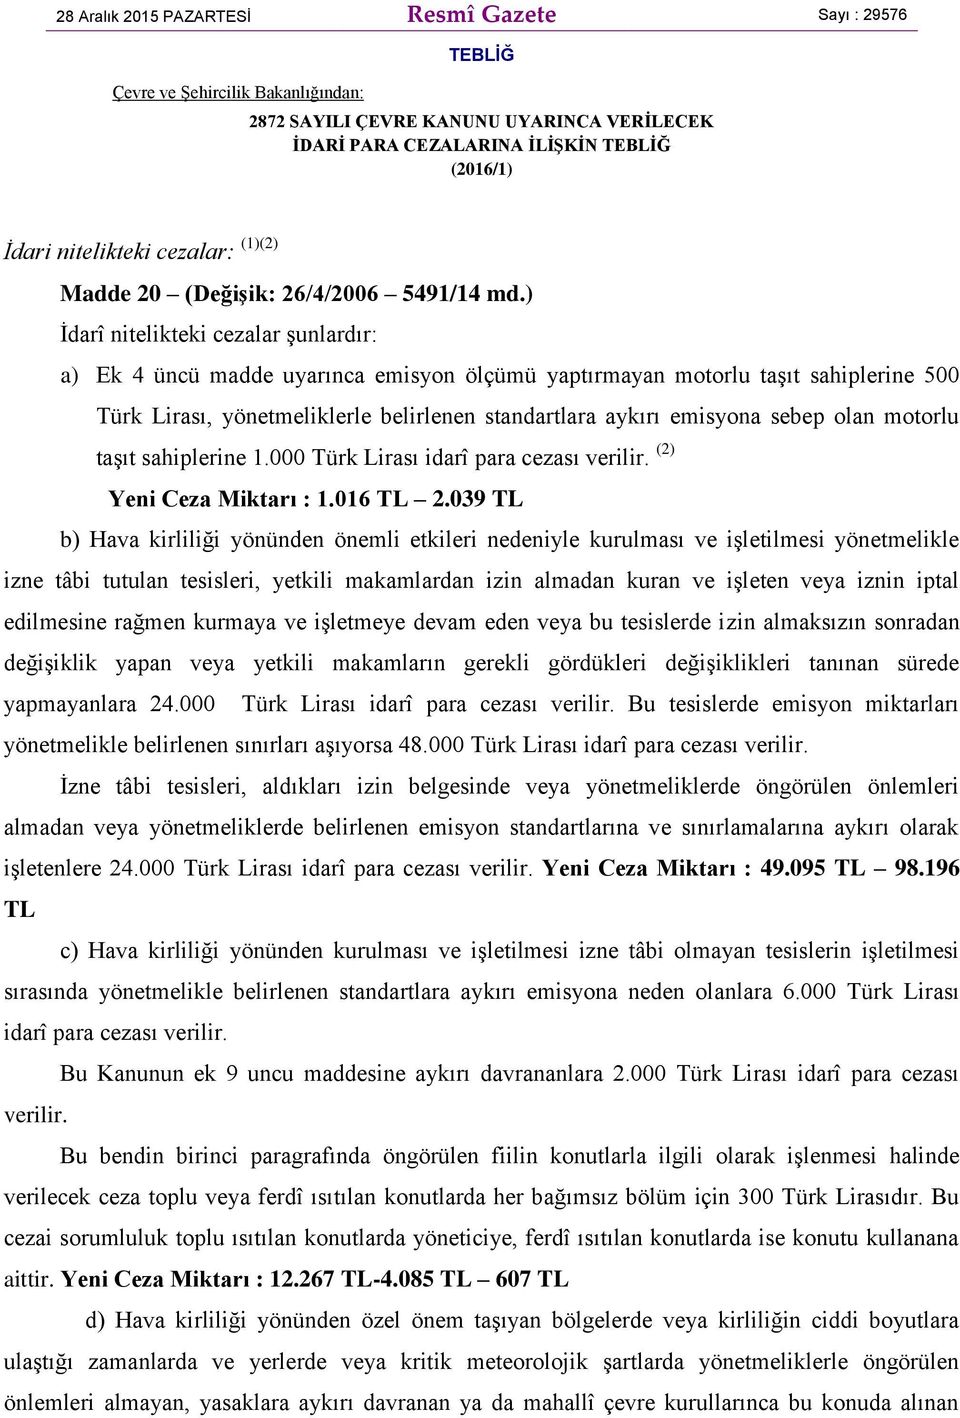 ) İdarî nitelikteki cezalar şunlardır: a) Ek 4 üncü madde uyarınca emisyon ölçümü yaptırmayan motorlu taşıt sahiplerine 500 Türk Lirası, yönetmeliklerle belirlenen standartlara aykırı emisyona sebep